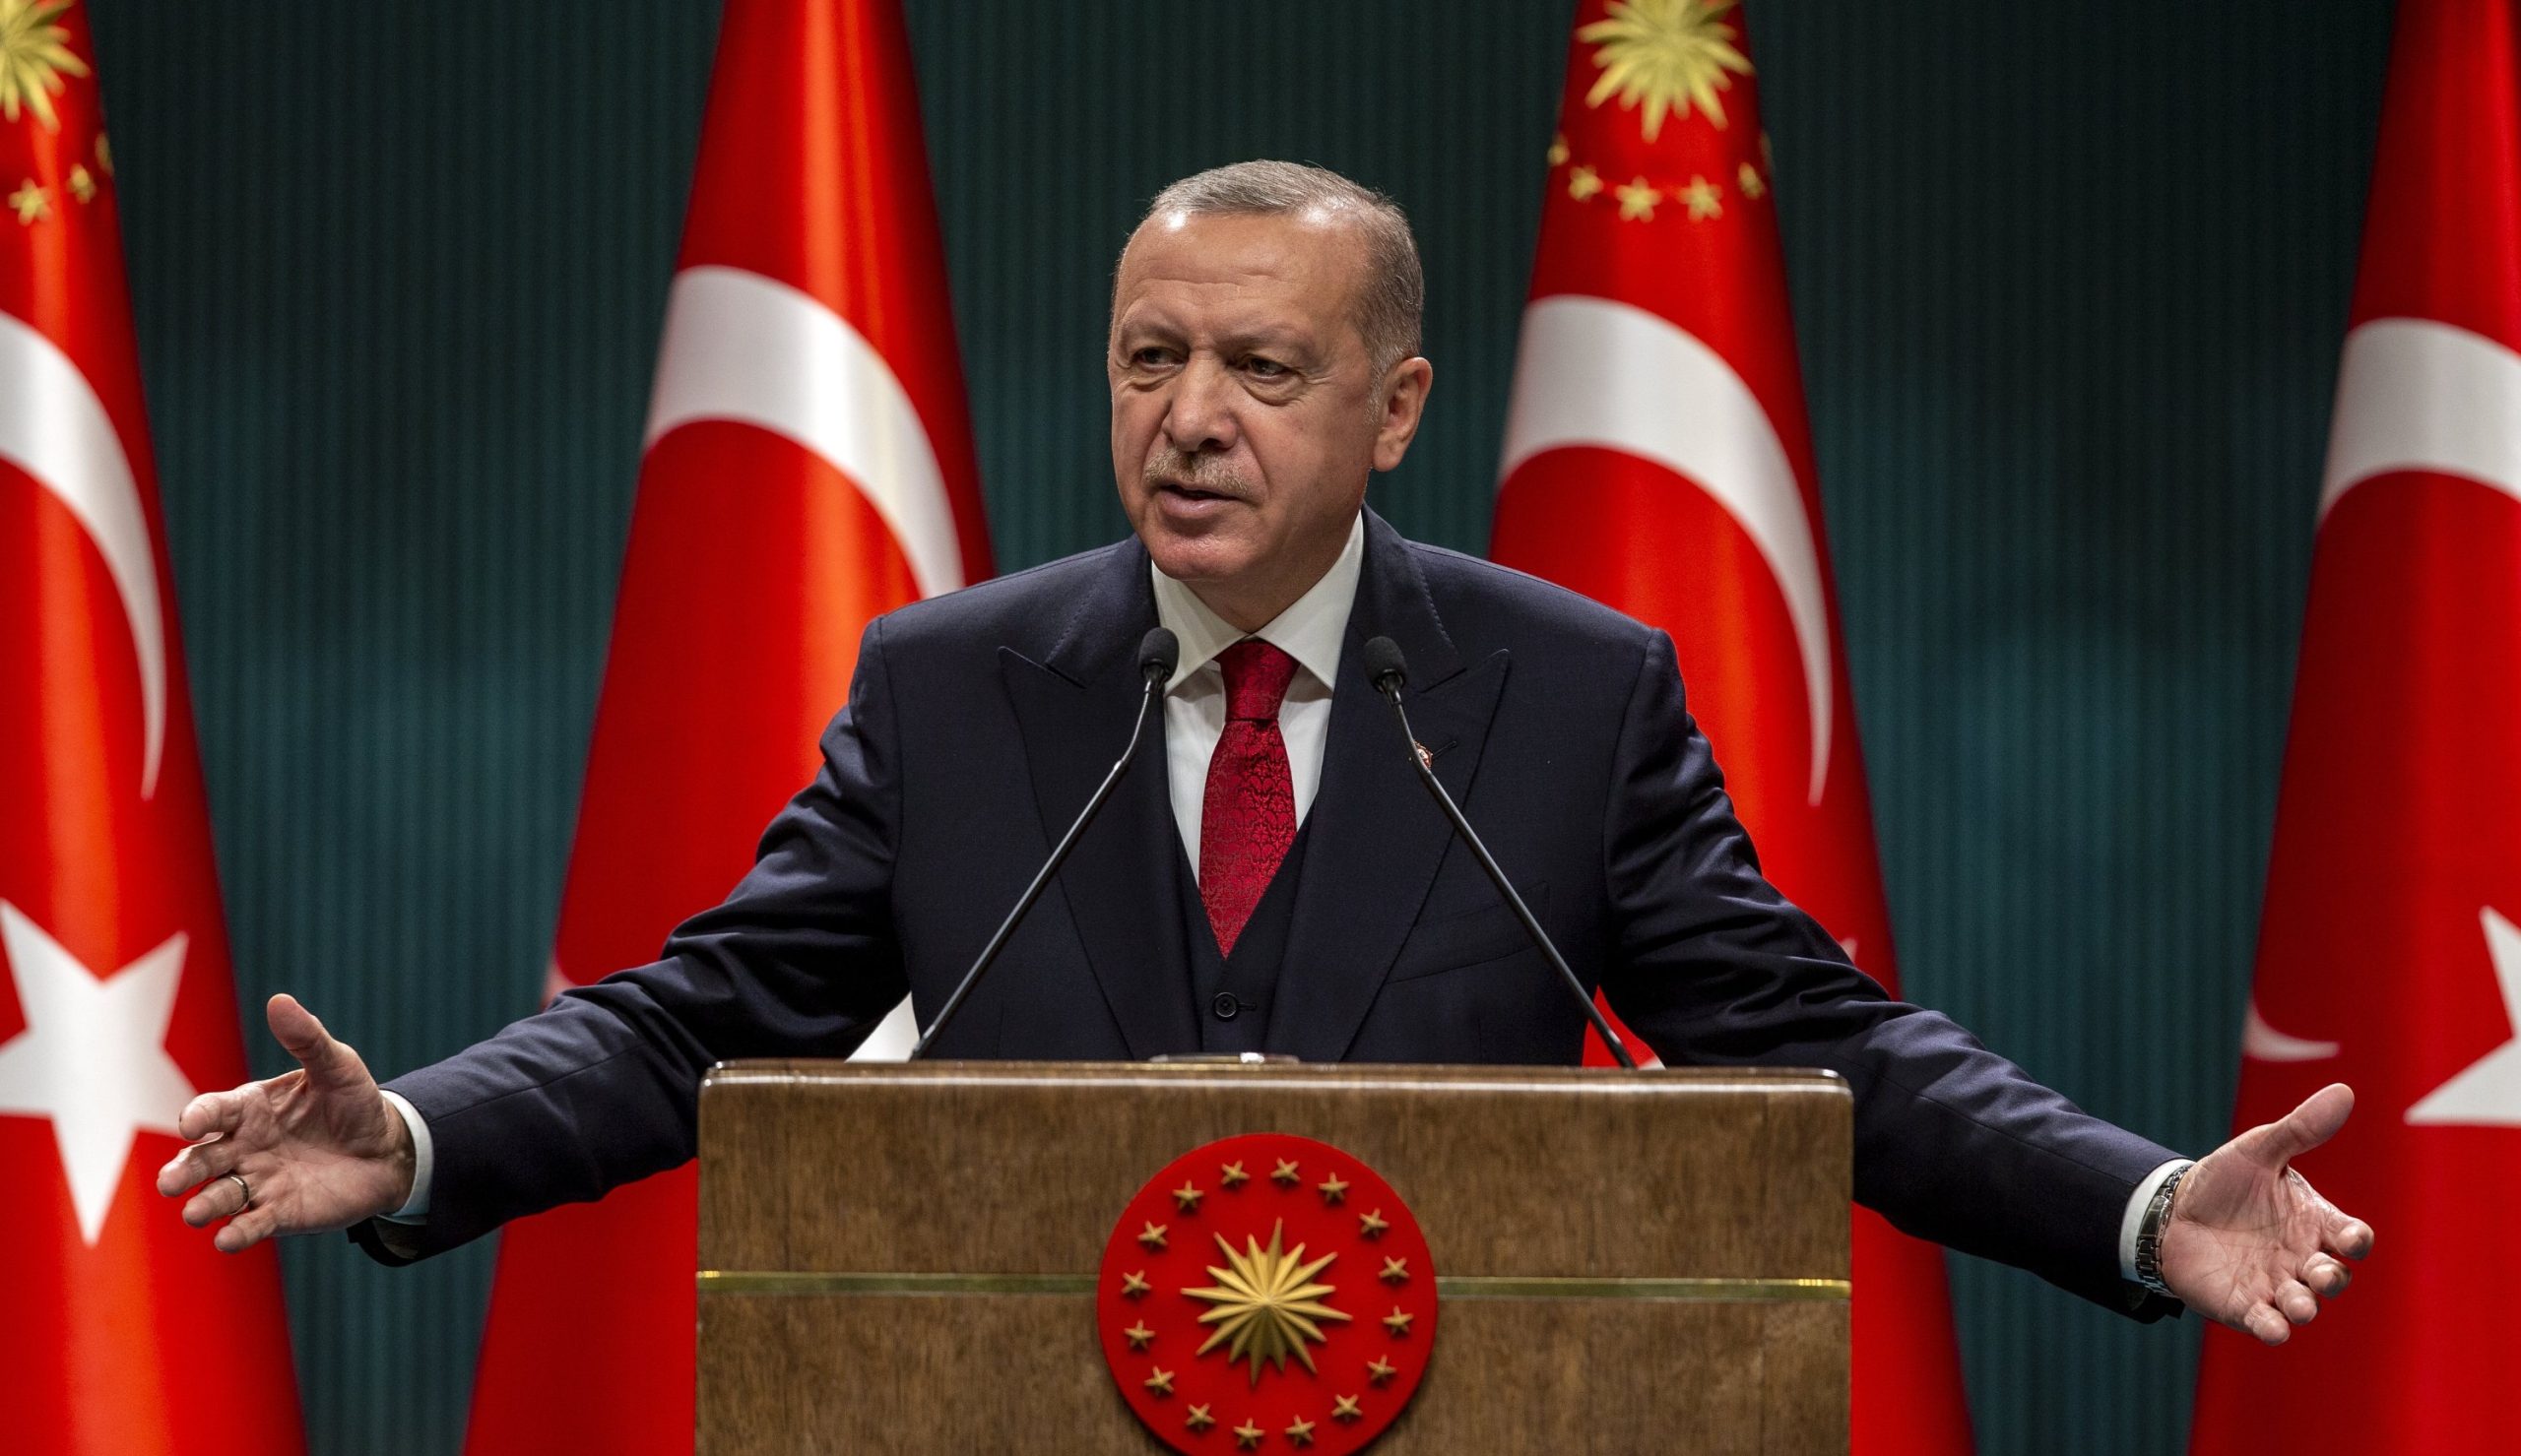 Θέμα «παραβίασης των ανθρωπίνων δικαιωμάτων των μελών της τουρκικής μειονότητας στην Ελλάδα» έθεσε επίσημα η Τουρκία!